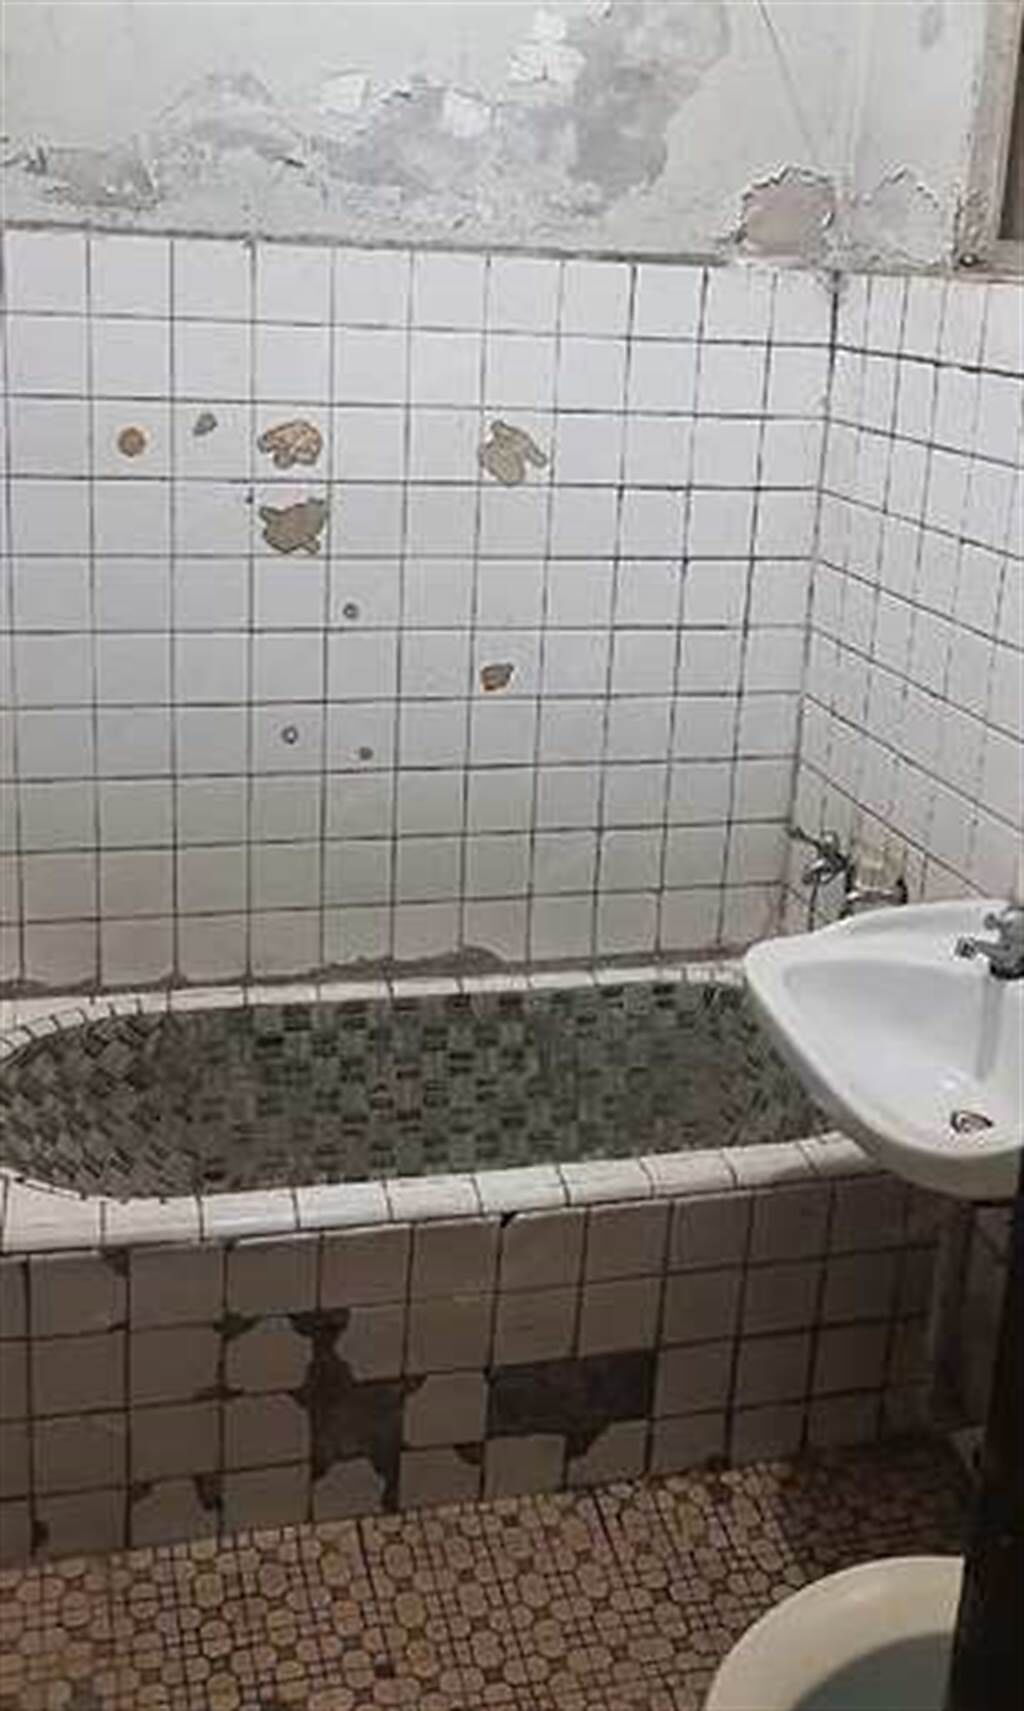 浴室還是超老舊的磁磚浴缸。(翻攝自PTT)